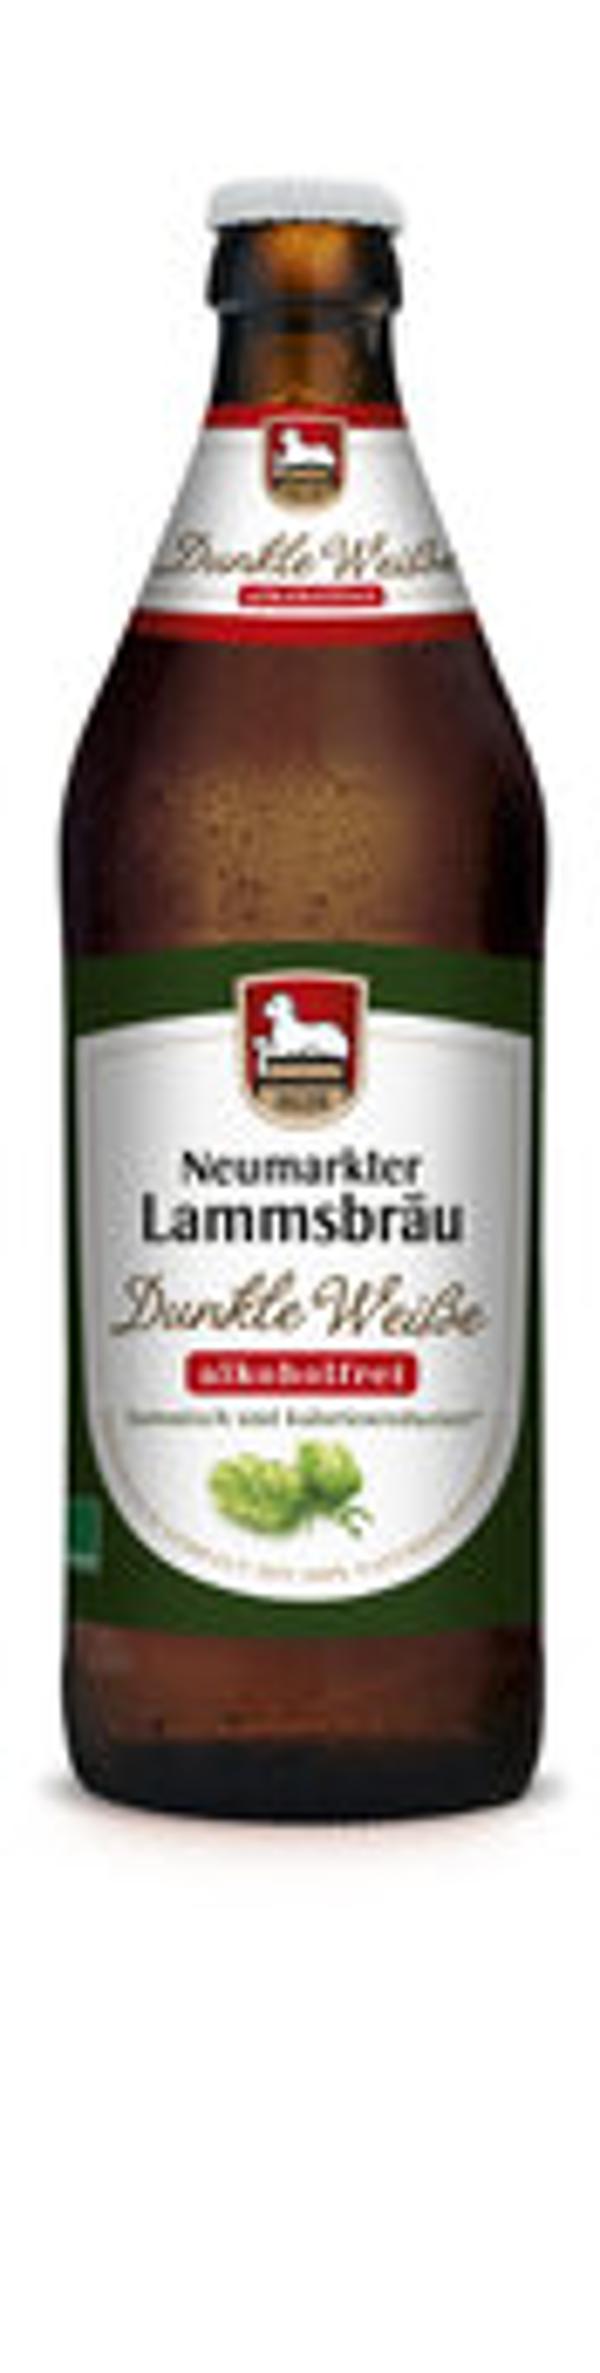 Produktfoto zu Lammsbräu Dunkle Weiße -alkoholfrei- 0,5l